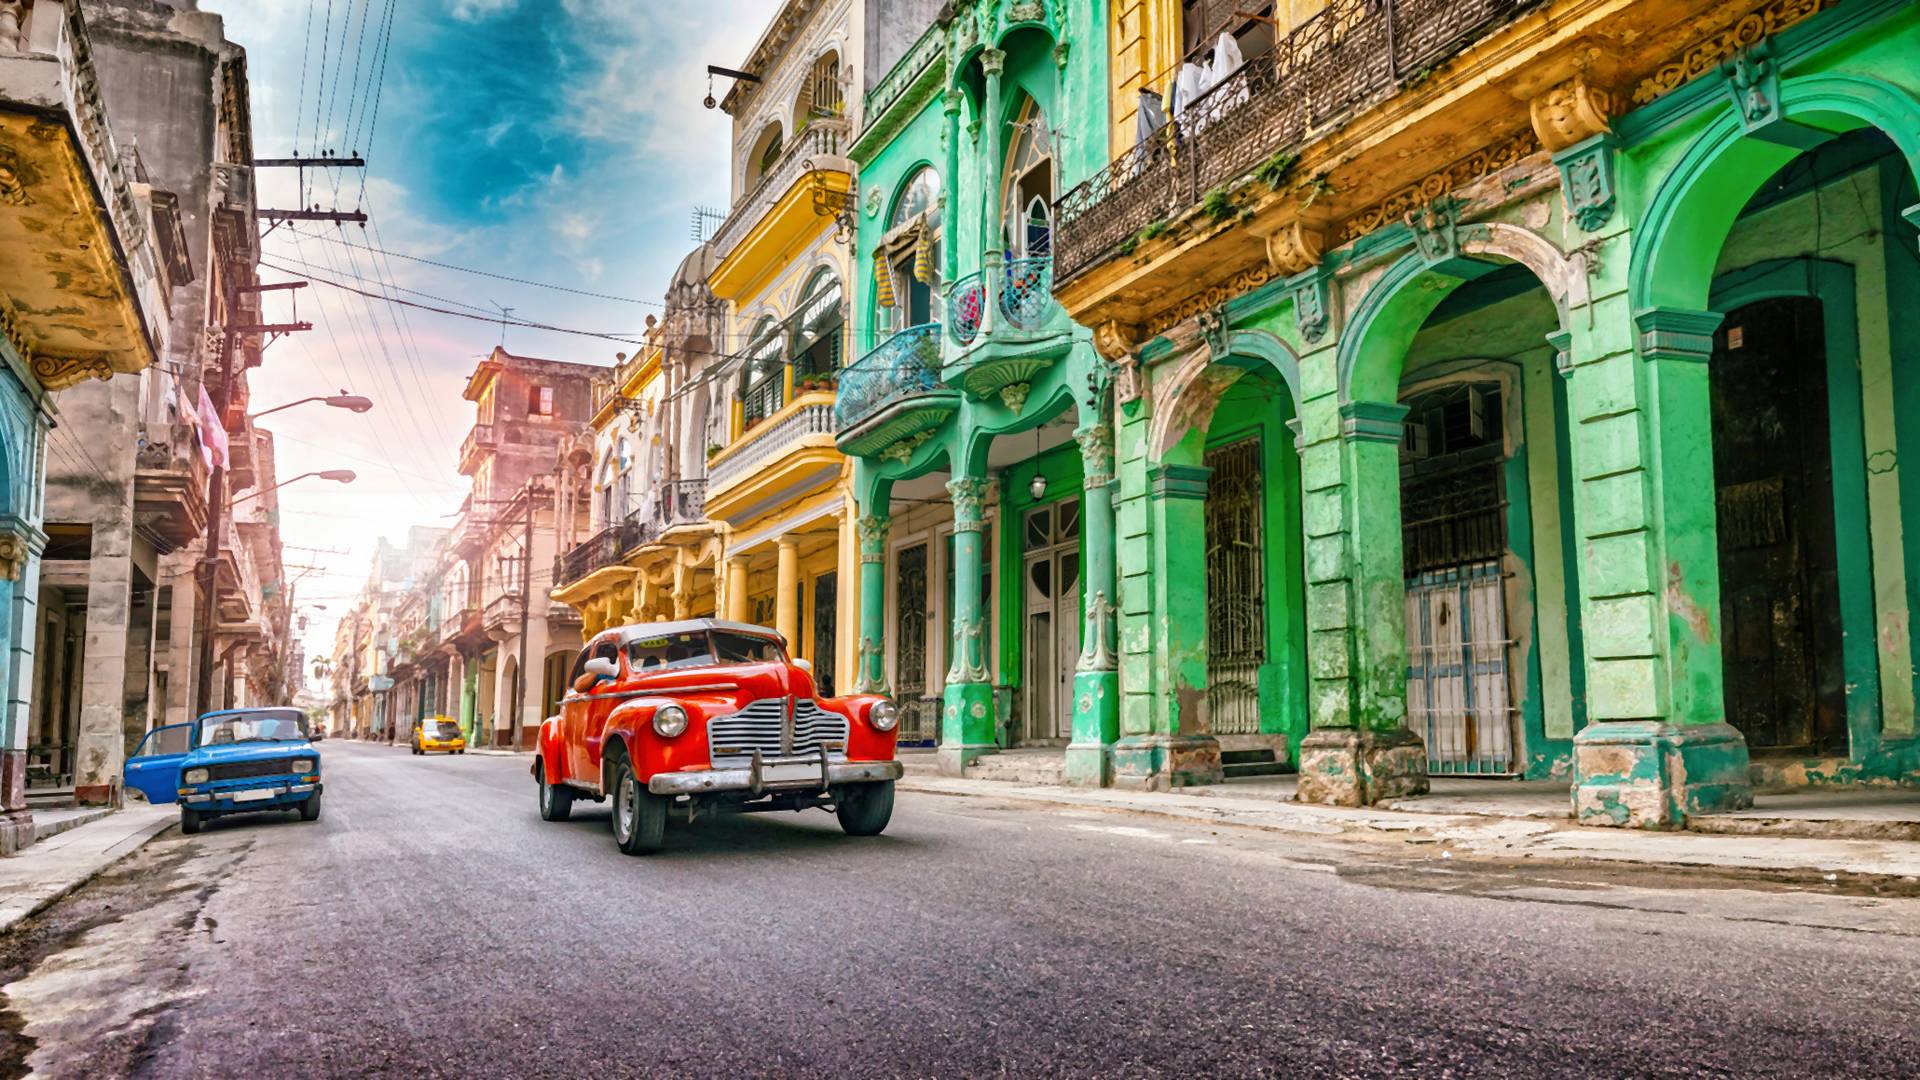 Kuba jak ze starych filmów - zimowe ferie to najlepszy czas dla portfela, aby odkryć jej uroki